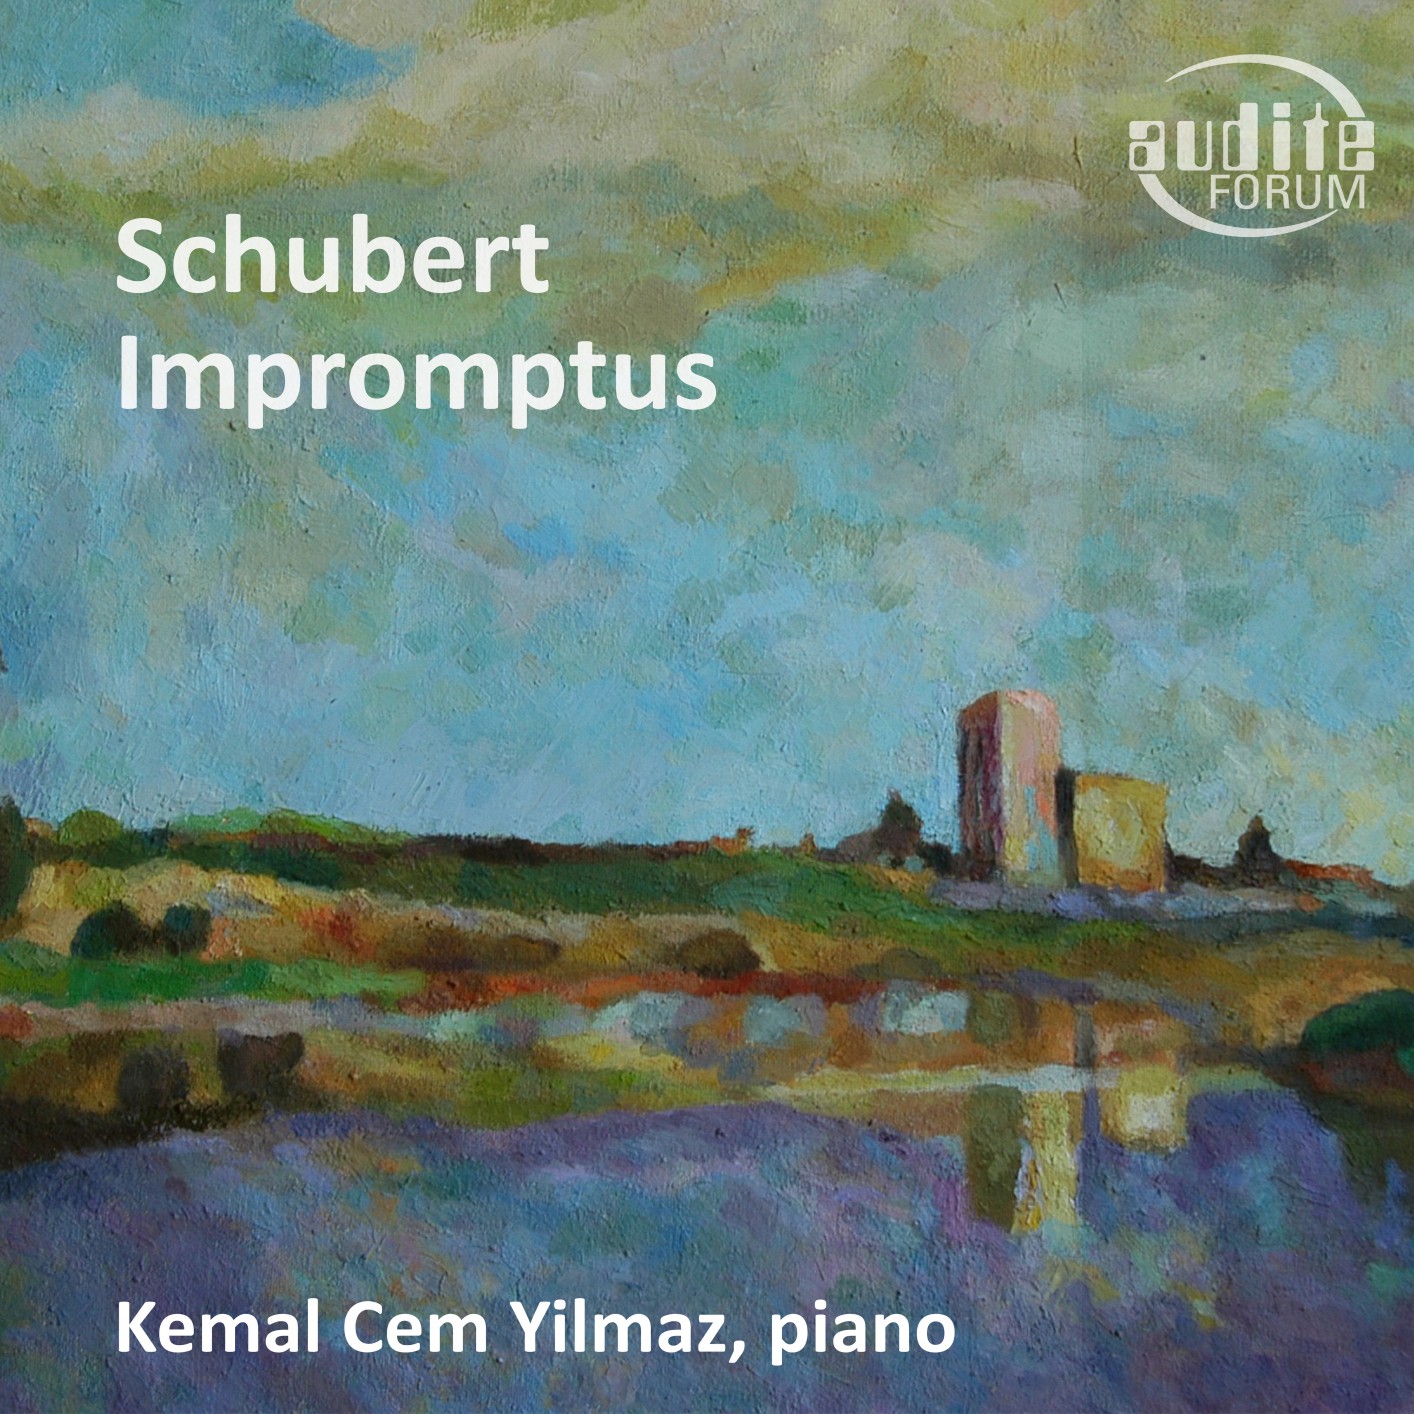 Kemal Cem Yilmaz – Schubert: Impromptus (2019) [FLAC 24bit/96kHz]